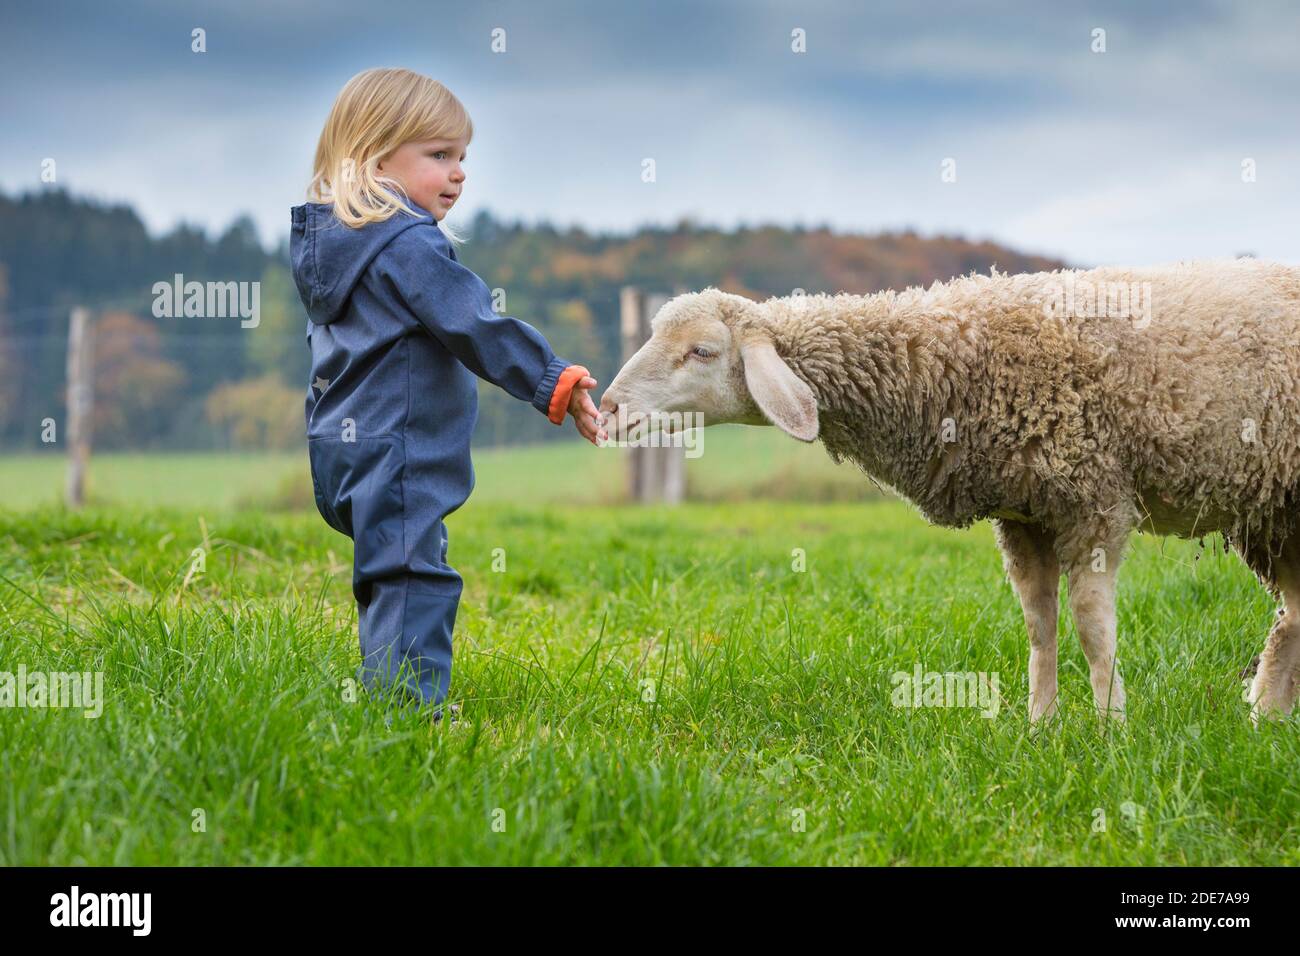 Deutschland, Bayern, Allgäu, Mindelheim, kleines Mädchen auf der Weide mit Schaf Stock Photo